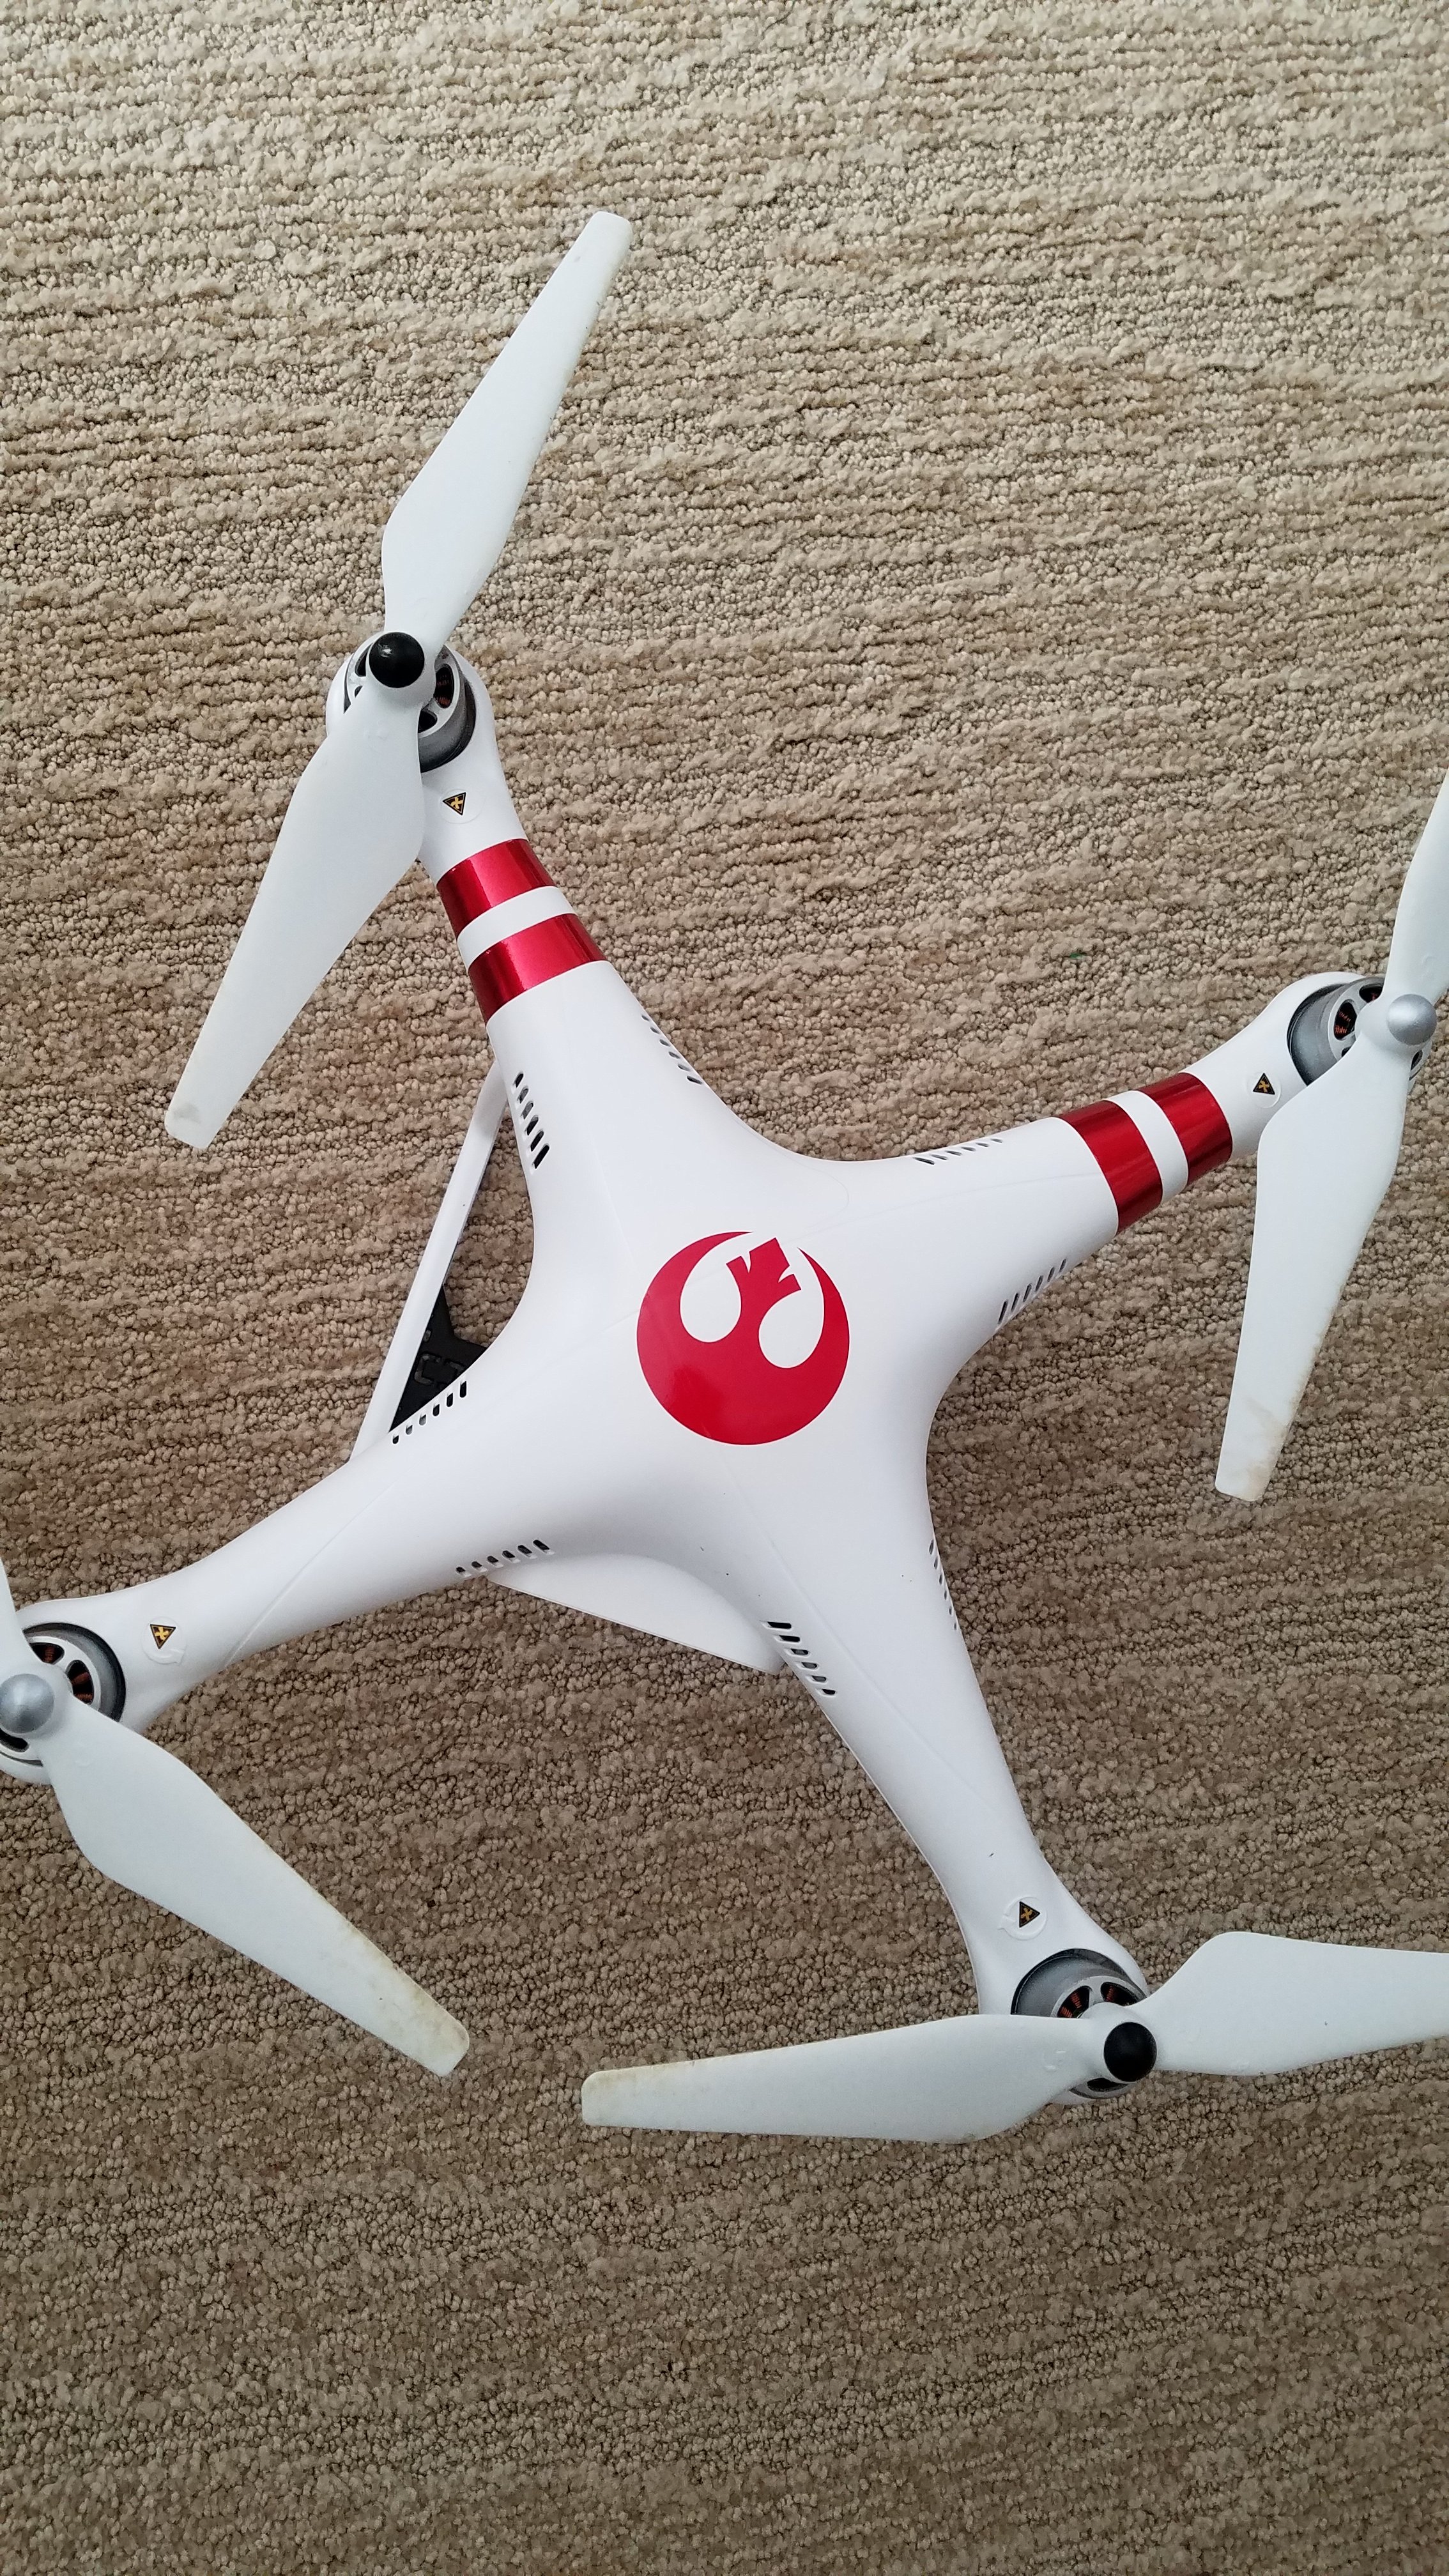 rebel alliance drone 2-4-18.jpg